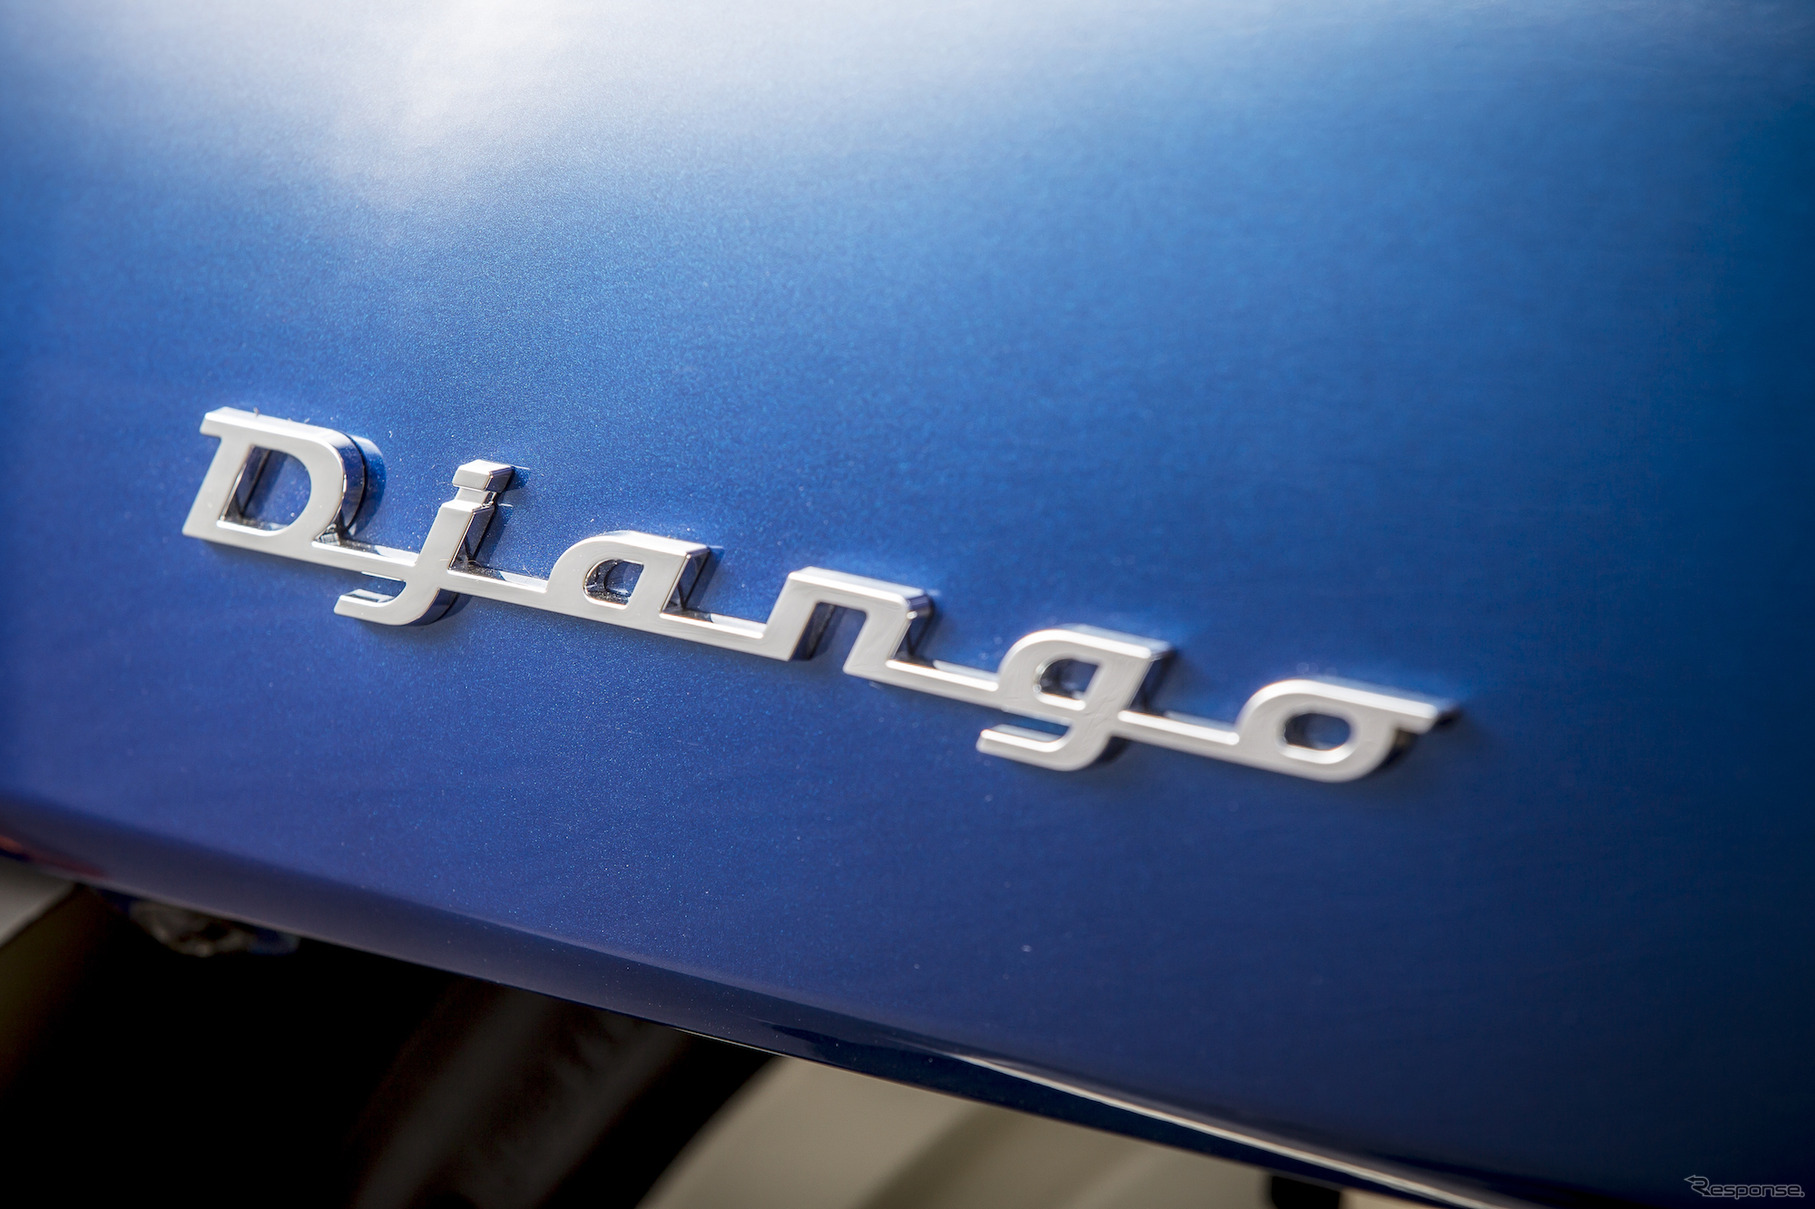 プジョー ジャンゴ125 ABS 120thリミテッドエディション